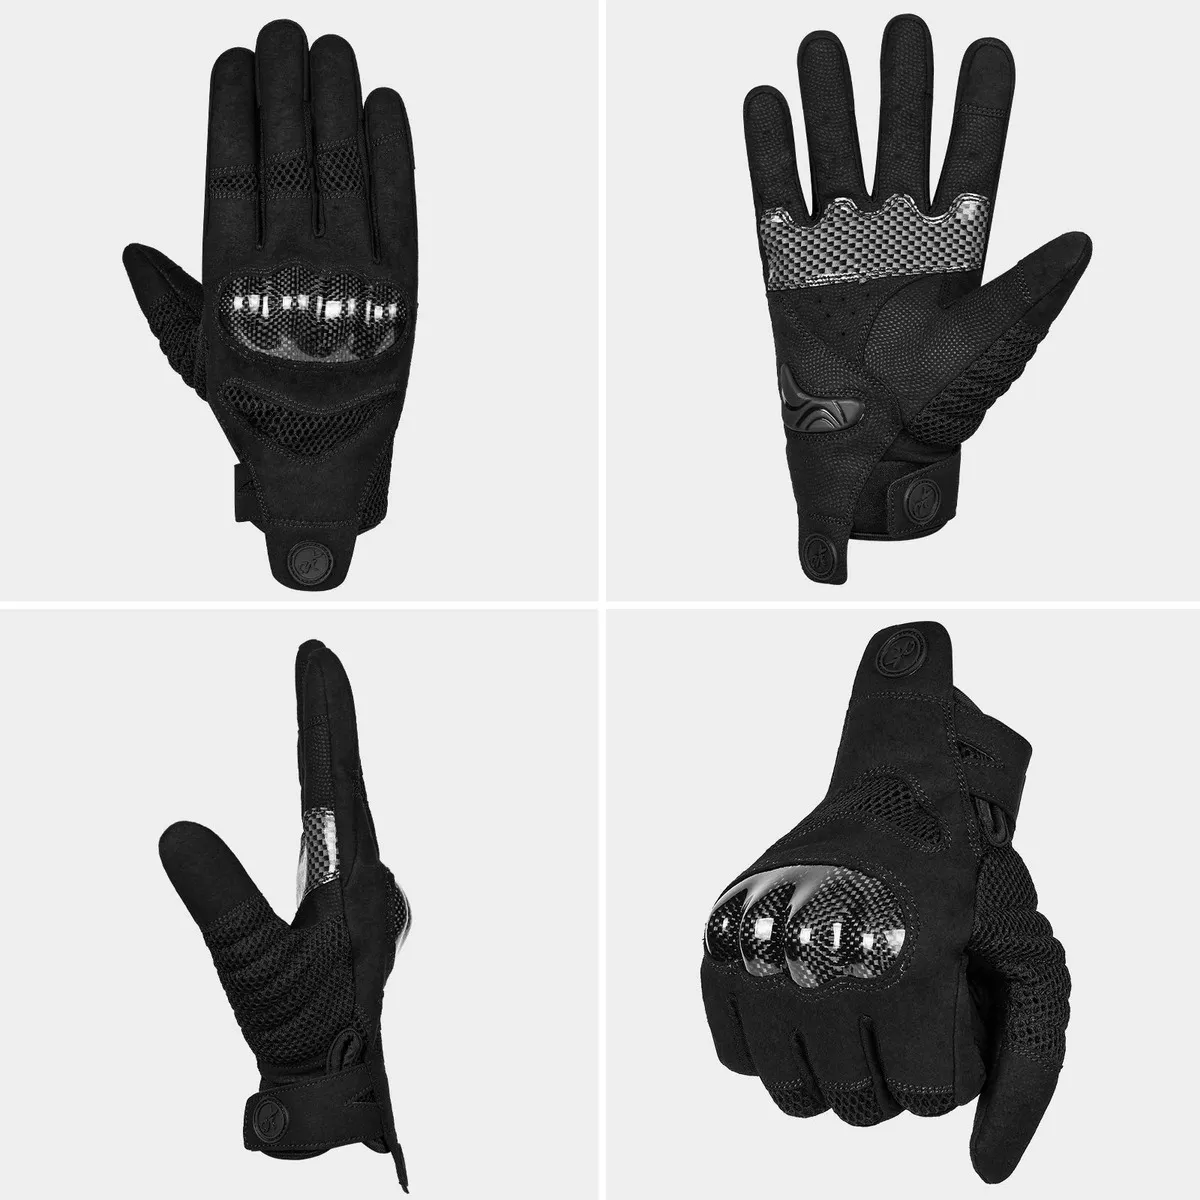 Primera imagen para búsqueda de guantes moto morados